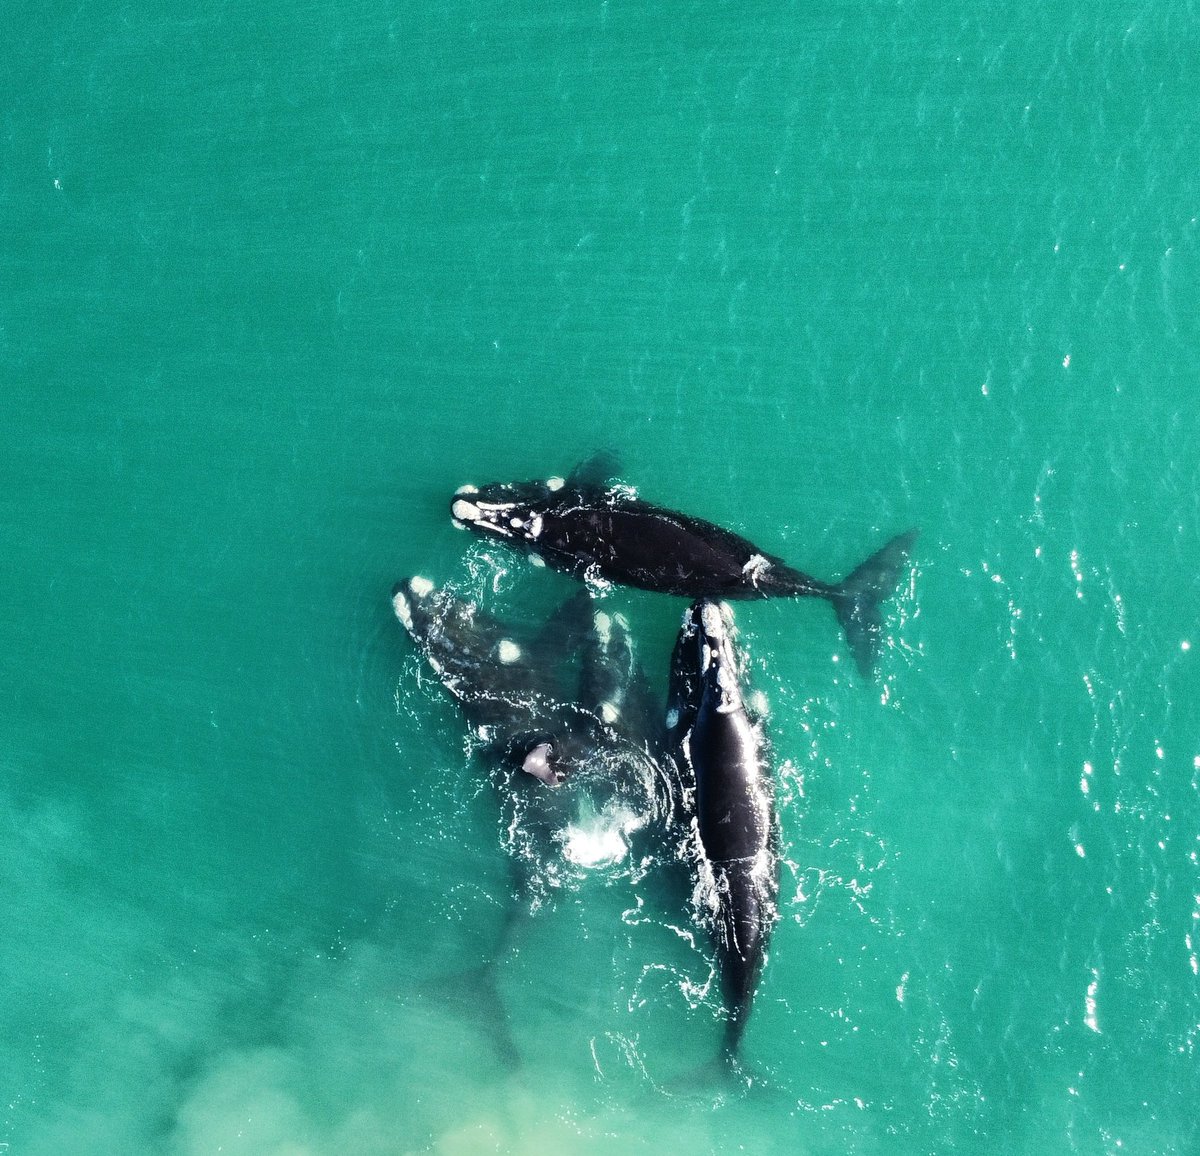 Cuatro ballenas francas por playa Serena. Un momento único. 

#ballenas
#mardelplata
#argentina
#oceano
#acantilados